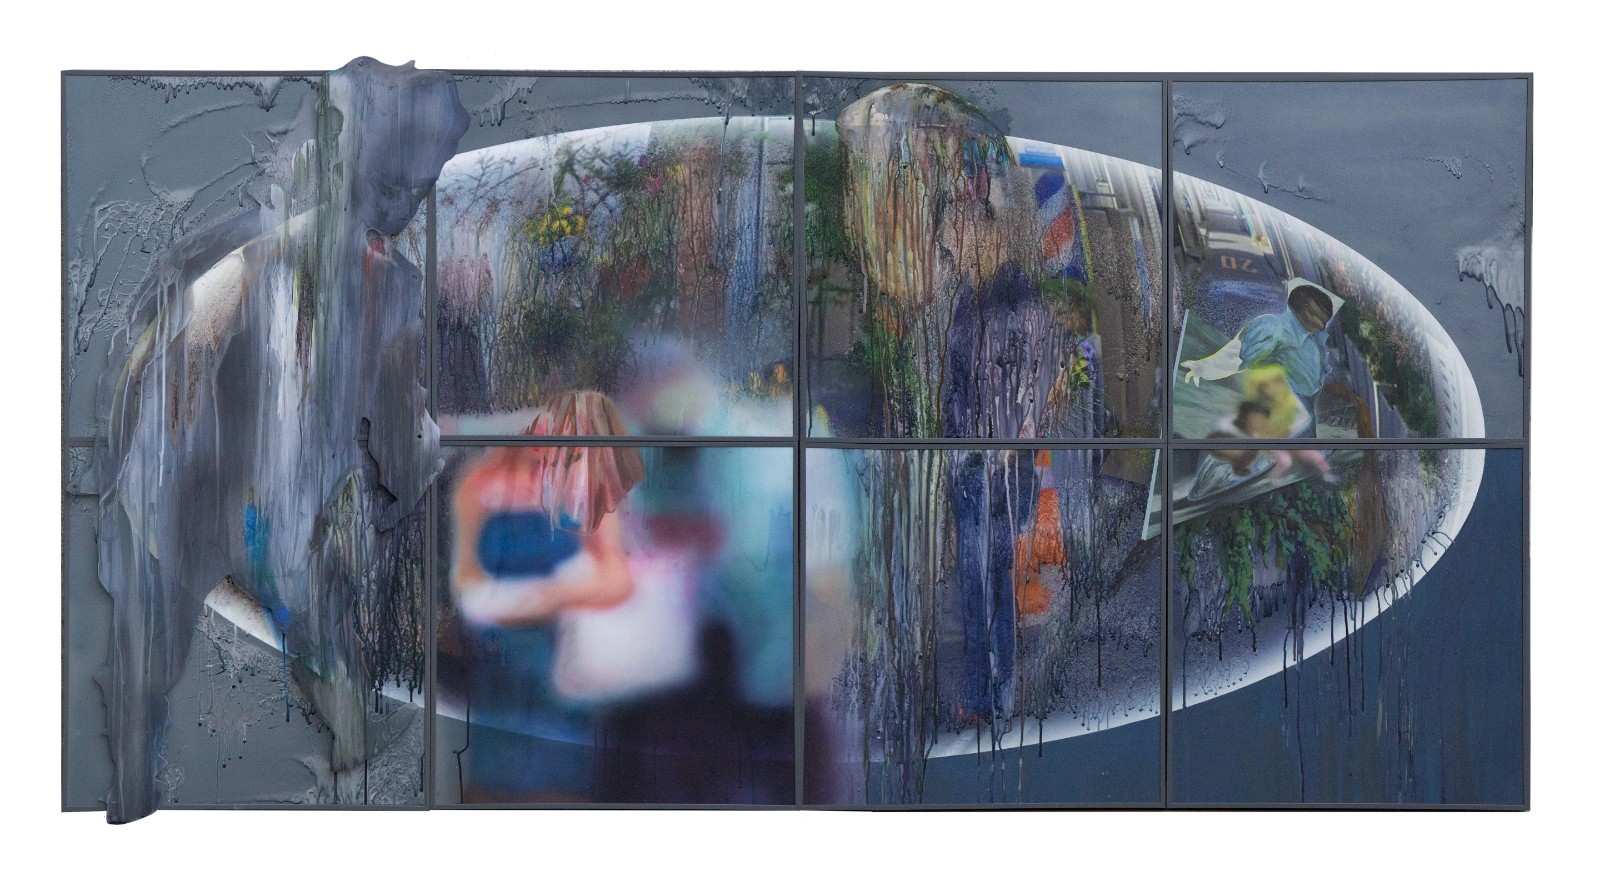 《无用的解放》，苏莘媞 ， 数位喷绘、墨水、丙烯、压克力板， 93x186cm， 2021